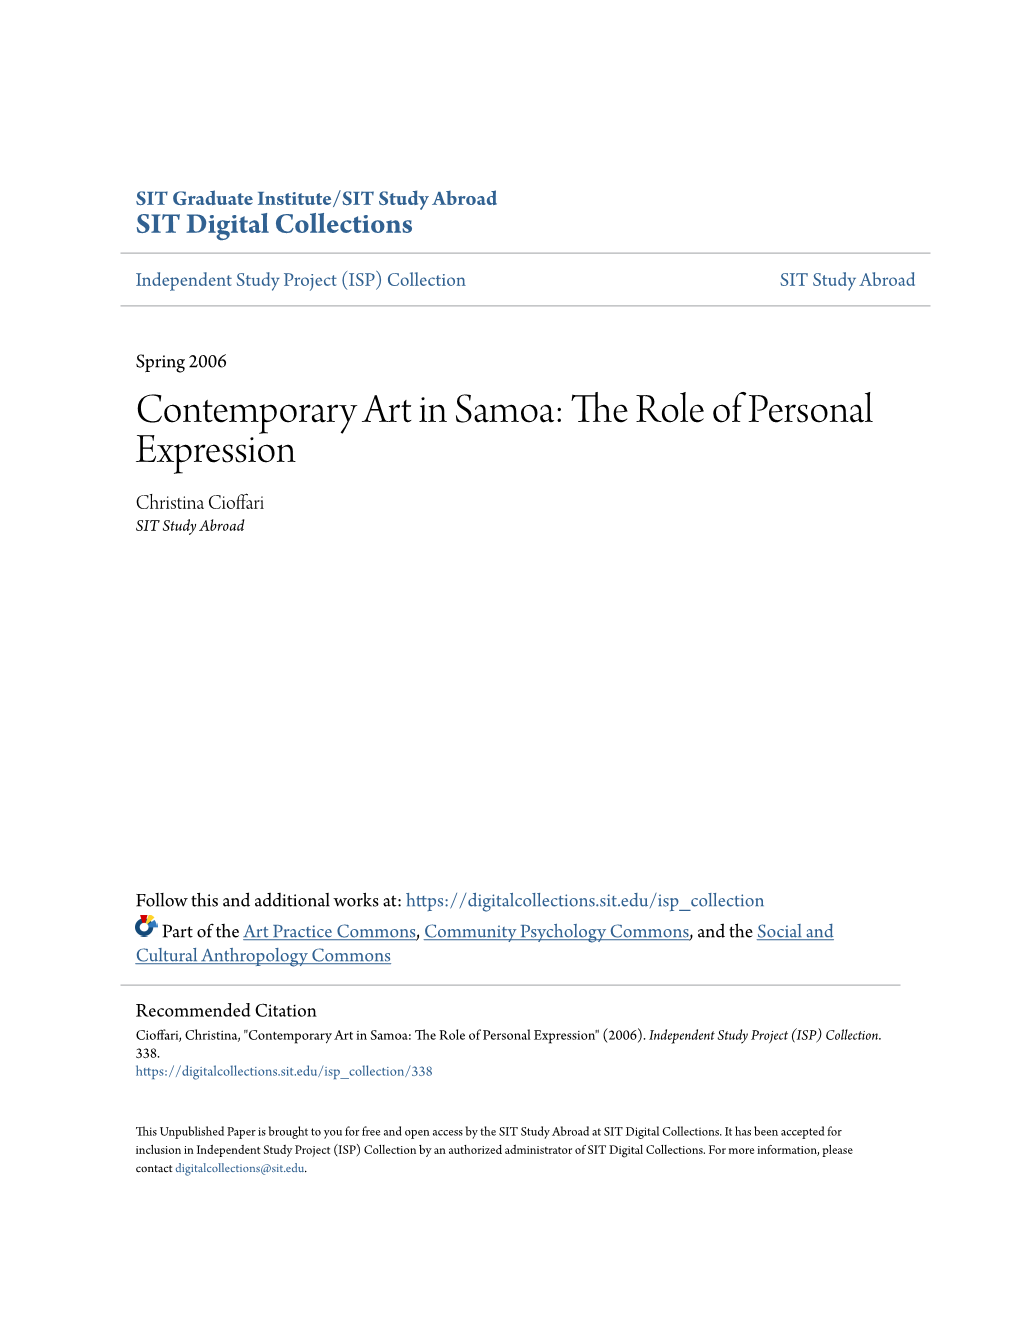 Contemporary Art in Samoa: the Role of Personal Expression Christina Cioffari SIT Study Abroad